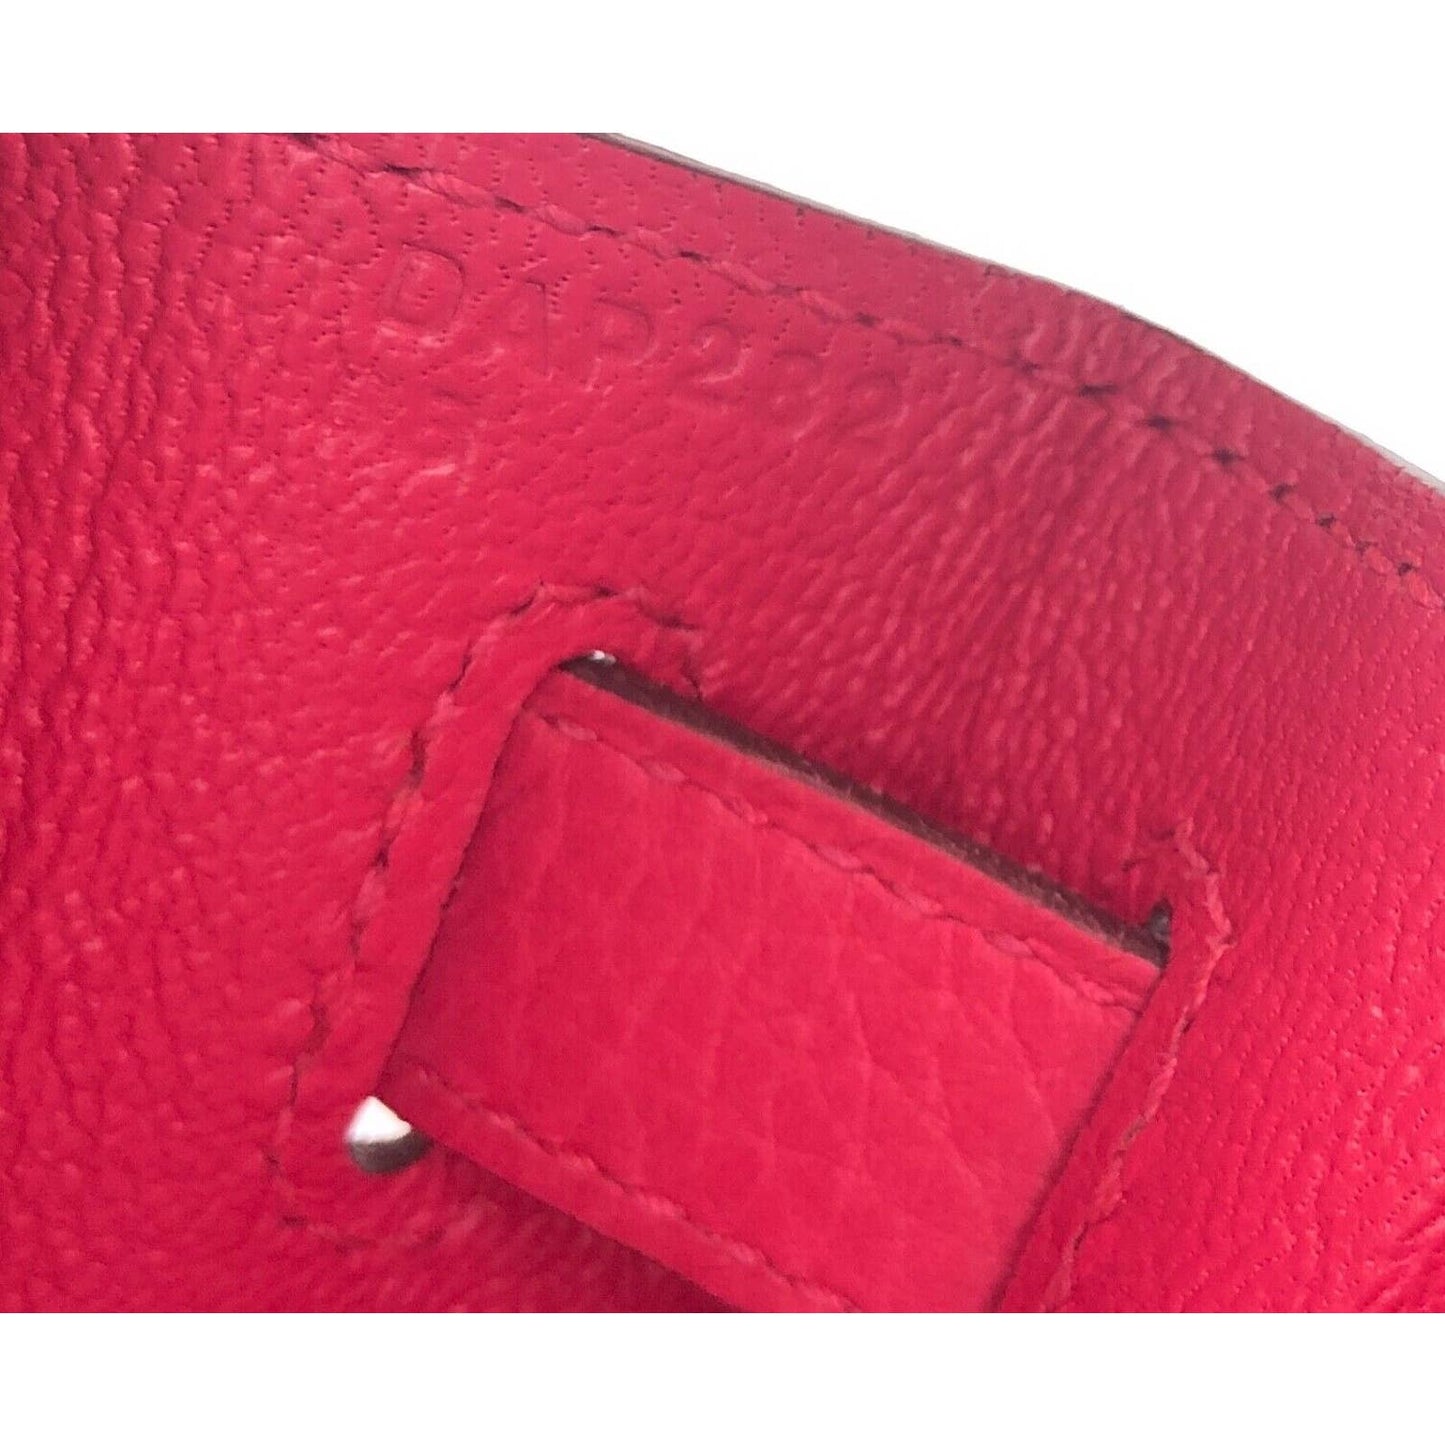 Hermes Kelly 28 Rose Extreme Pink Leather Shoulder Bag Gold Hardware 2019